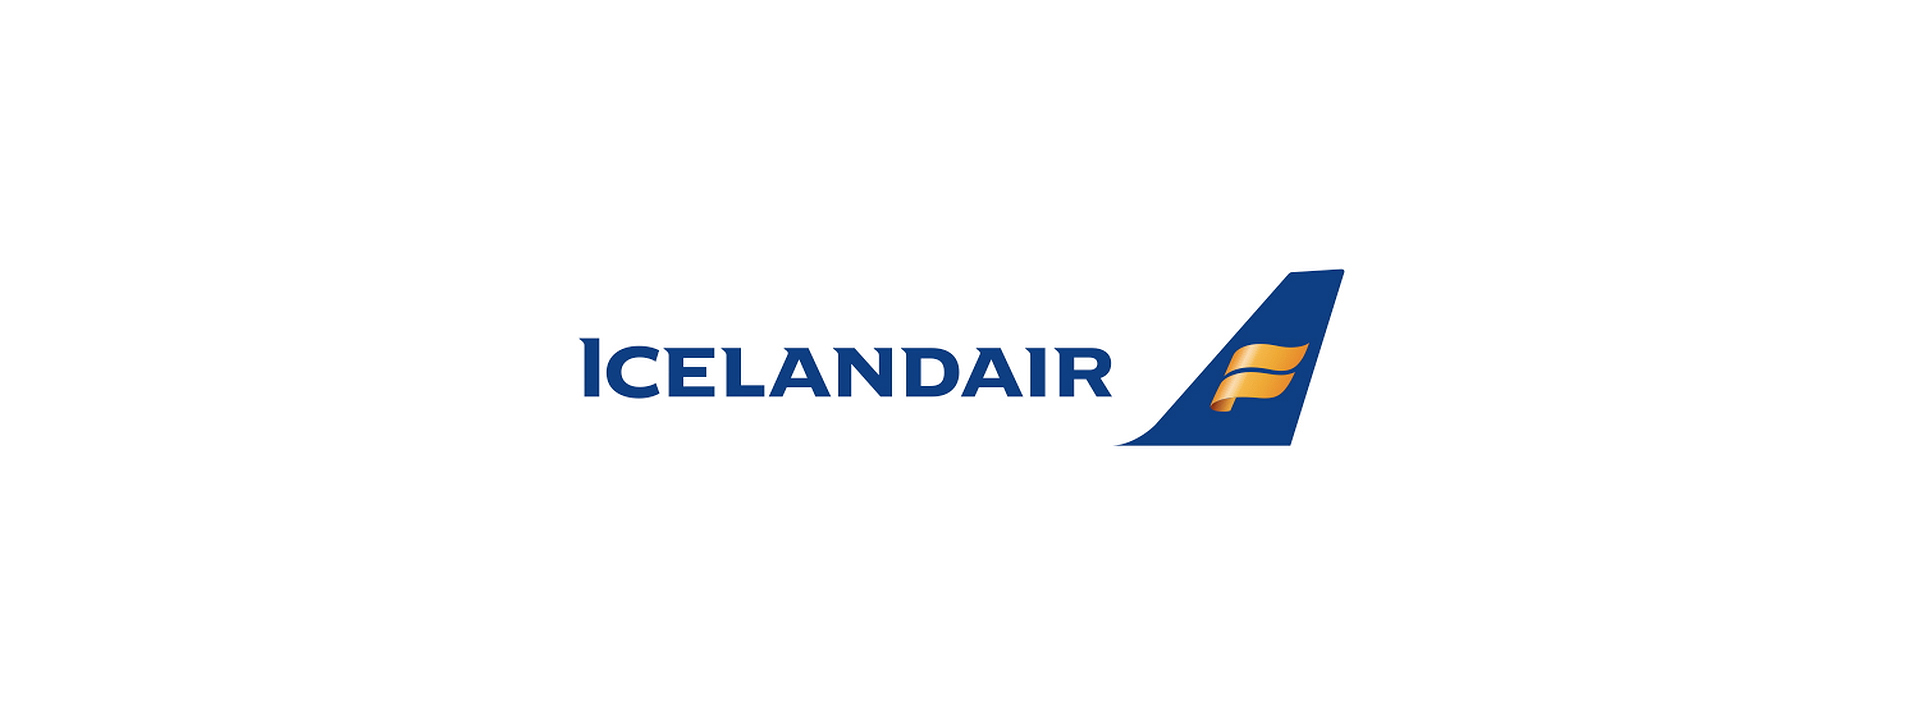 Icelandair_Heimaleikurinn_29.jpg